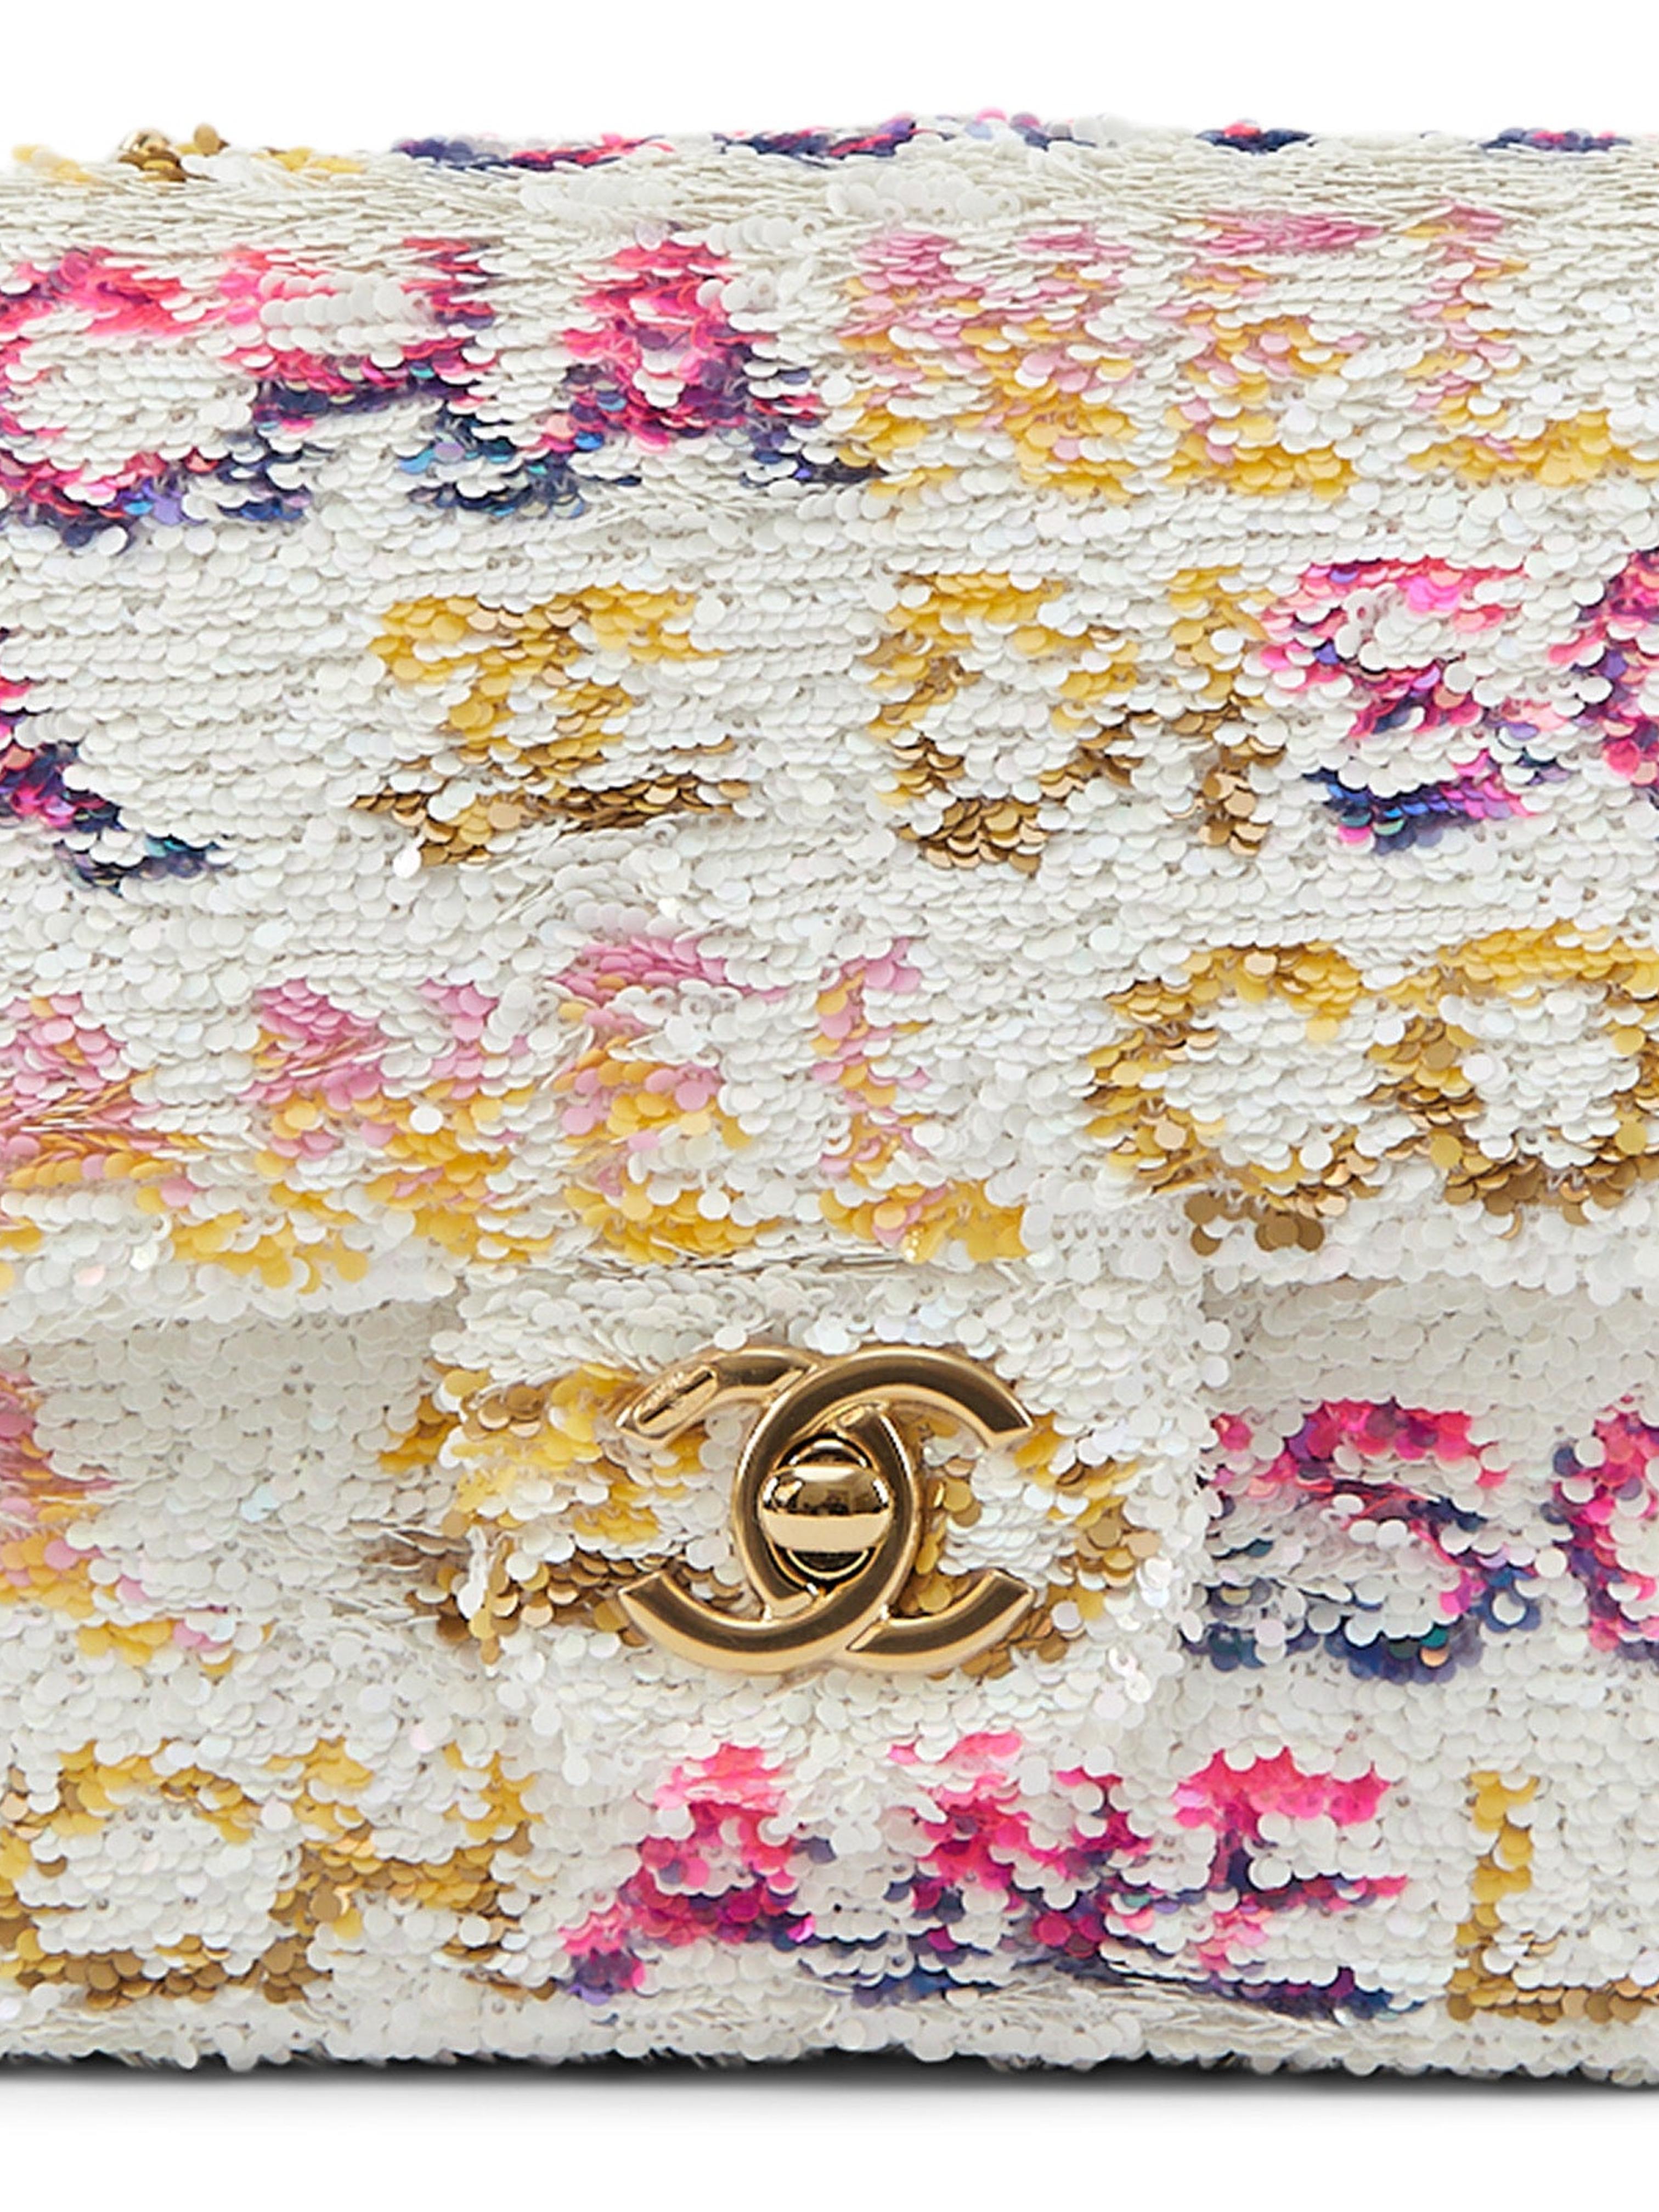 Chanel - Mini sac à rabat rectangulaire DiscoFlap en noir, blanc et rose

Paillettes et cuir de veau, avec accessoires en métal doré 

Accompagné de : Boîte Chanel, sac à poussière et jeton d'authenticité

Dimensions : 20 x 12 x 6 cm 

*Pas de